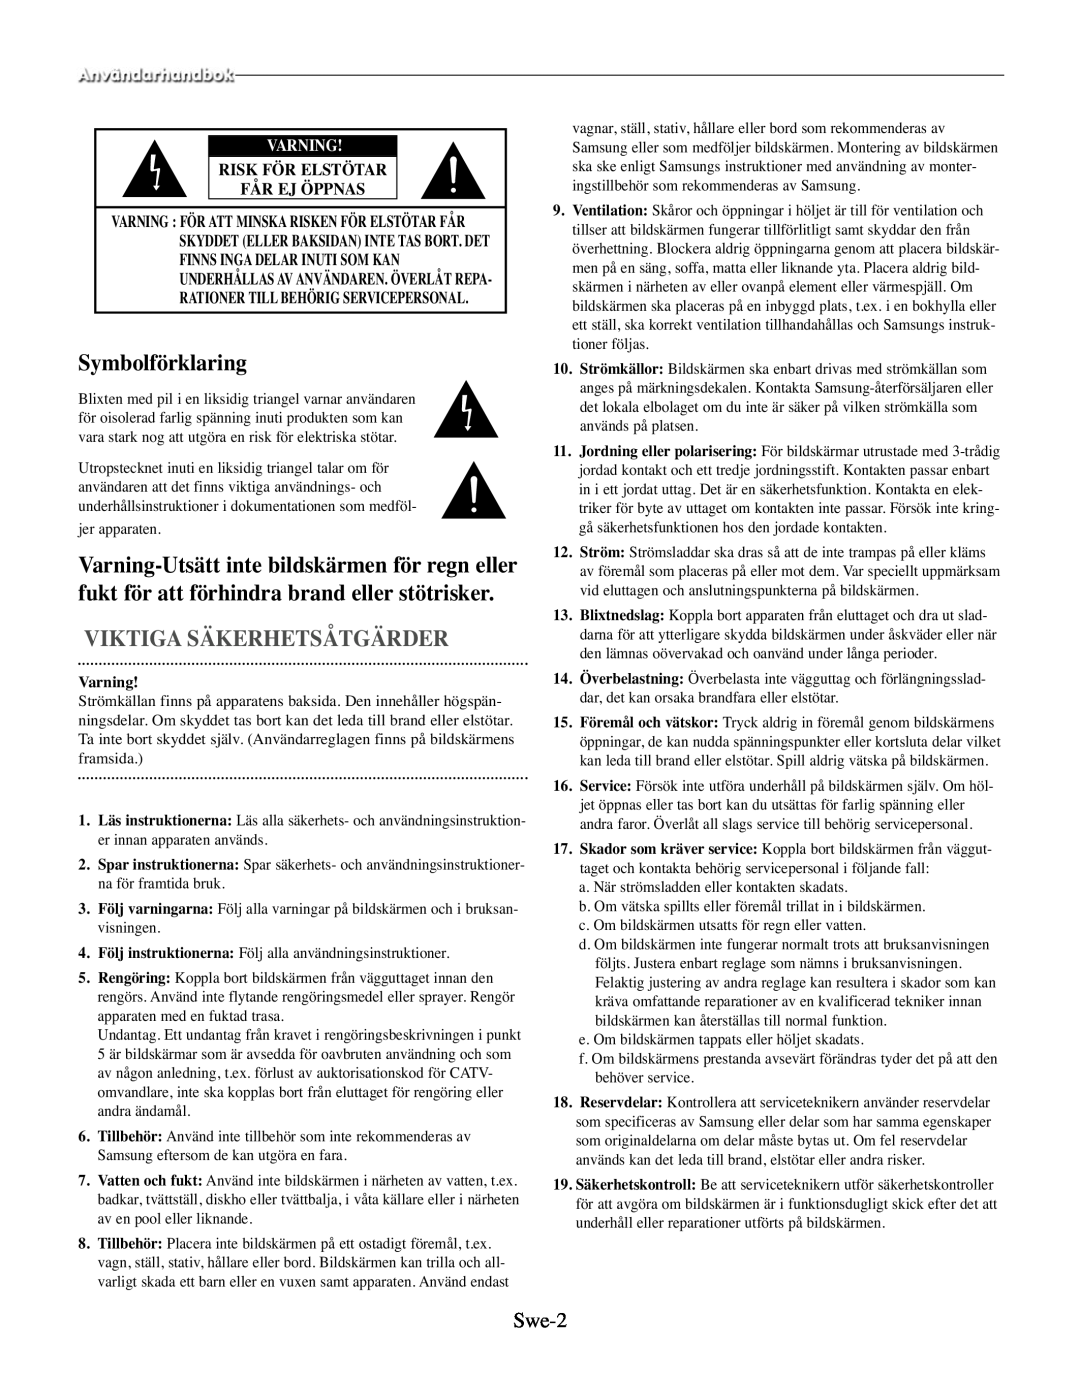 Samsung SMO-210MP/UMG, SMO-210TRP manual Symbolförklaring, Viktiga Säkerhetsåtgärder, Swe-2, Varning 